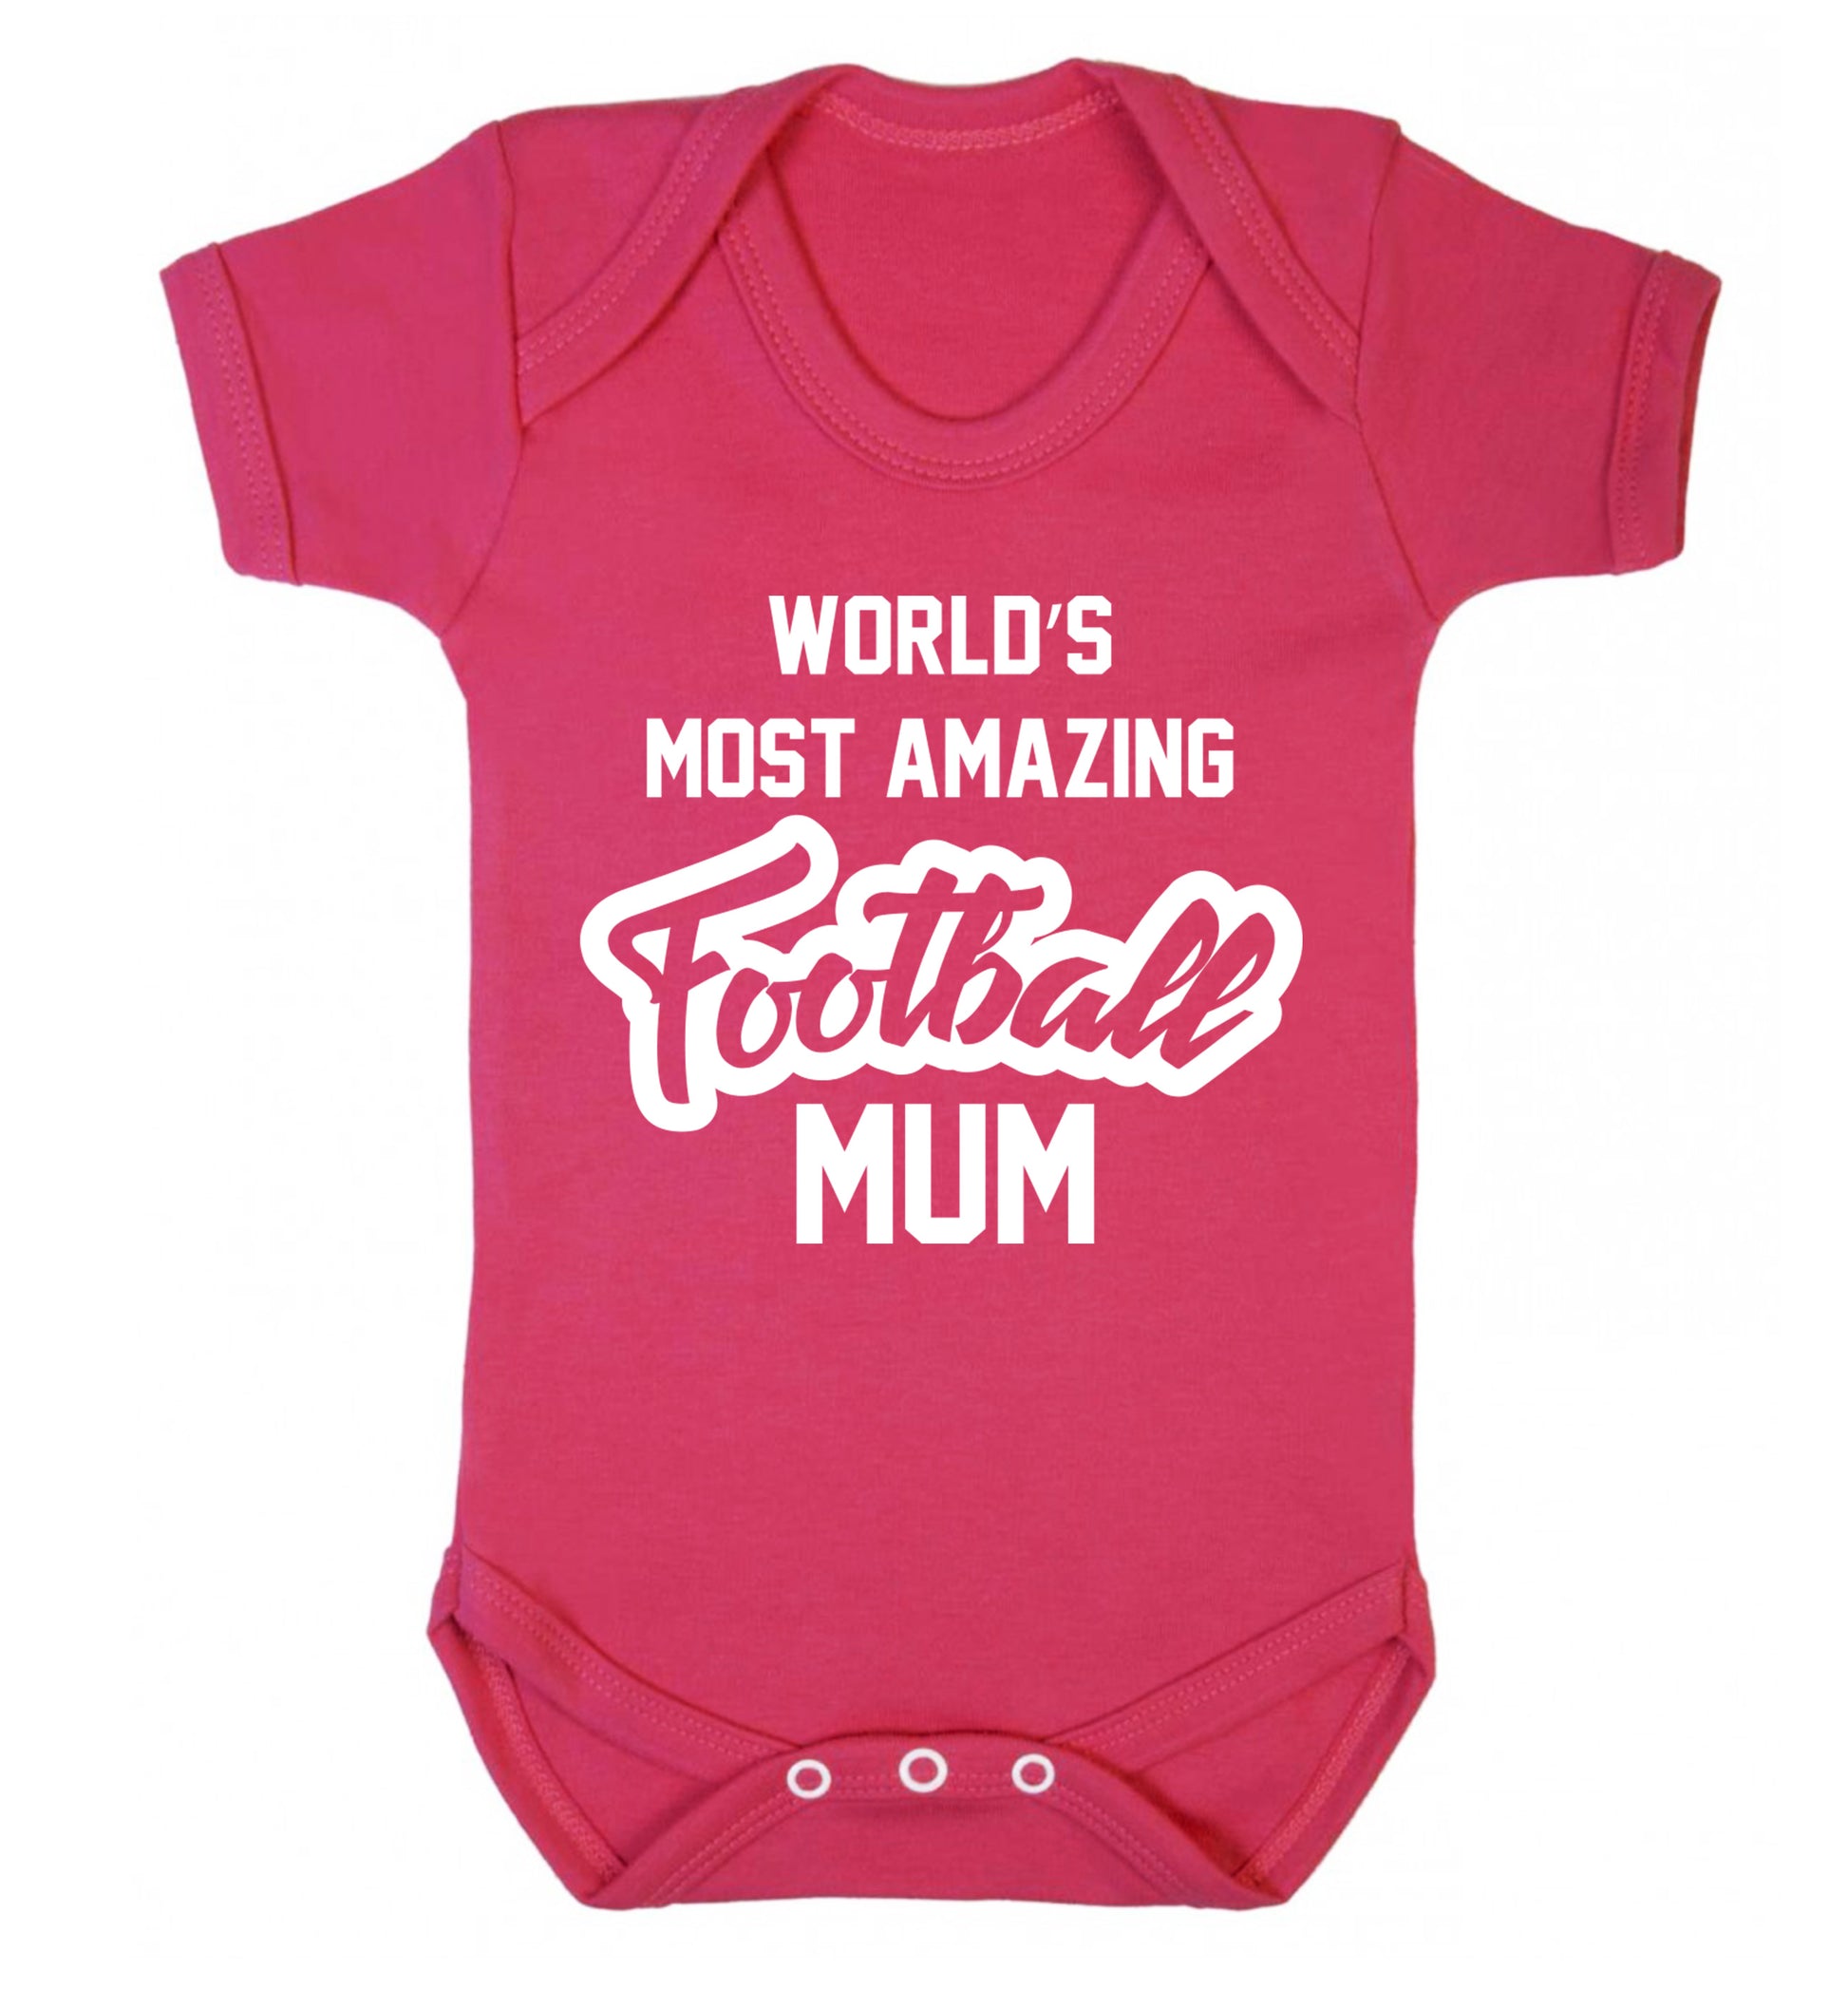 Worlds most amazing football mum Baby Vest dark pink 18-24 months